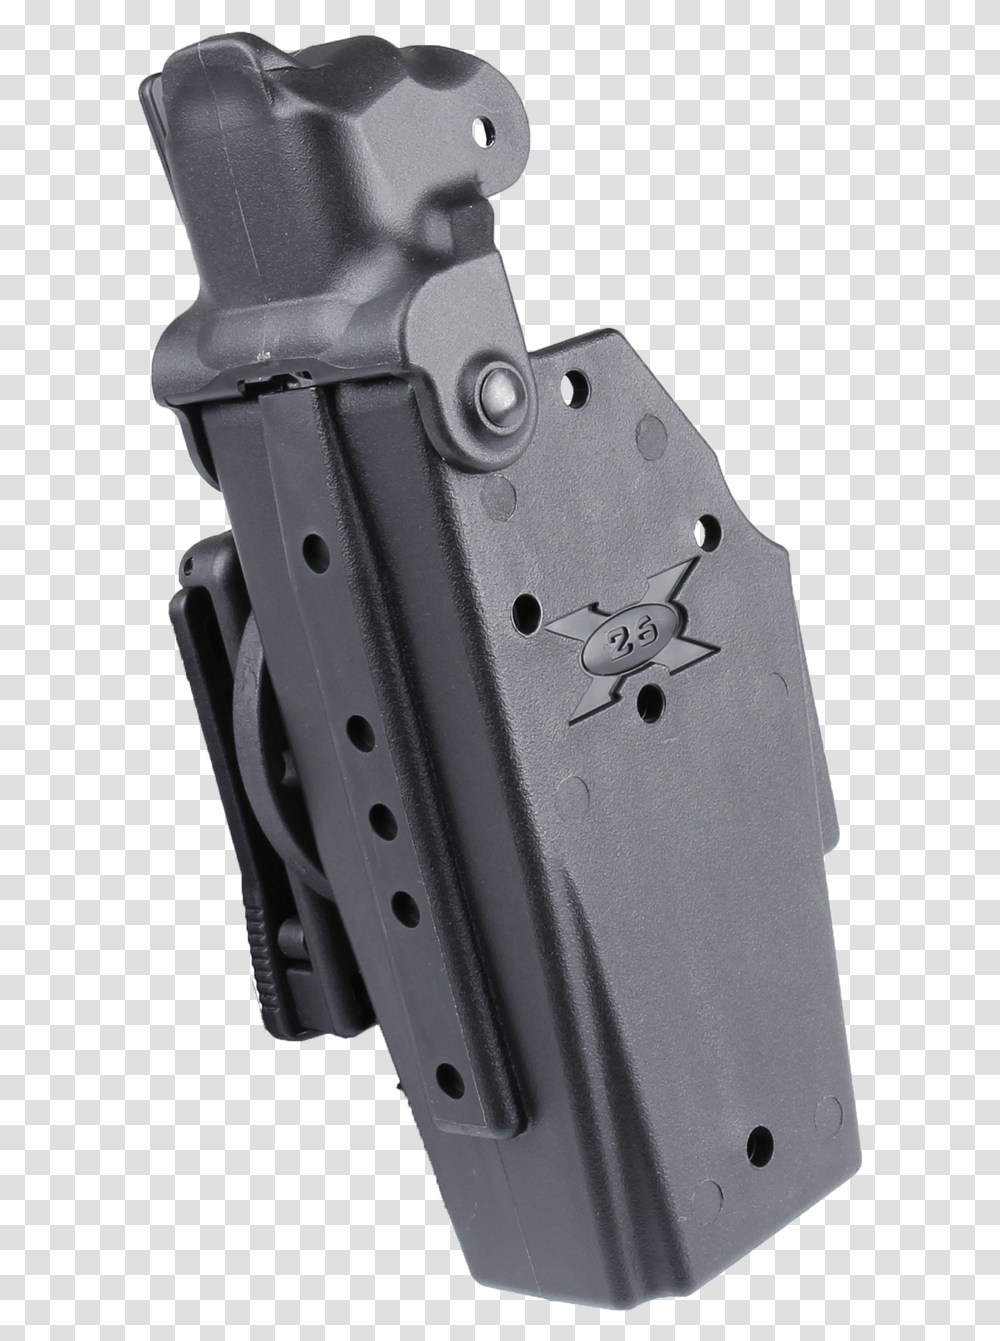 Blade Tech Taser X 26 Holster Handgun Holster, Camera, Electronics, Weapon, Weaponry Transparent Png